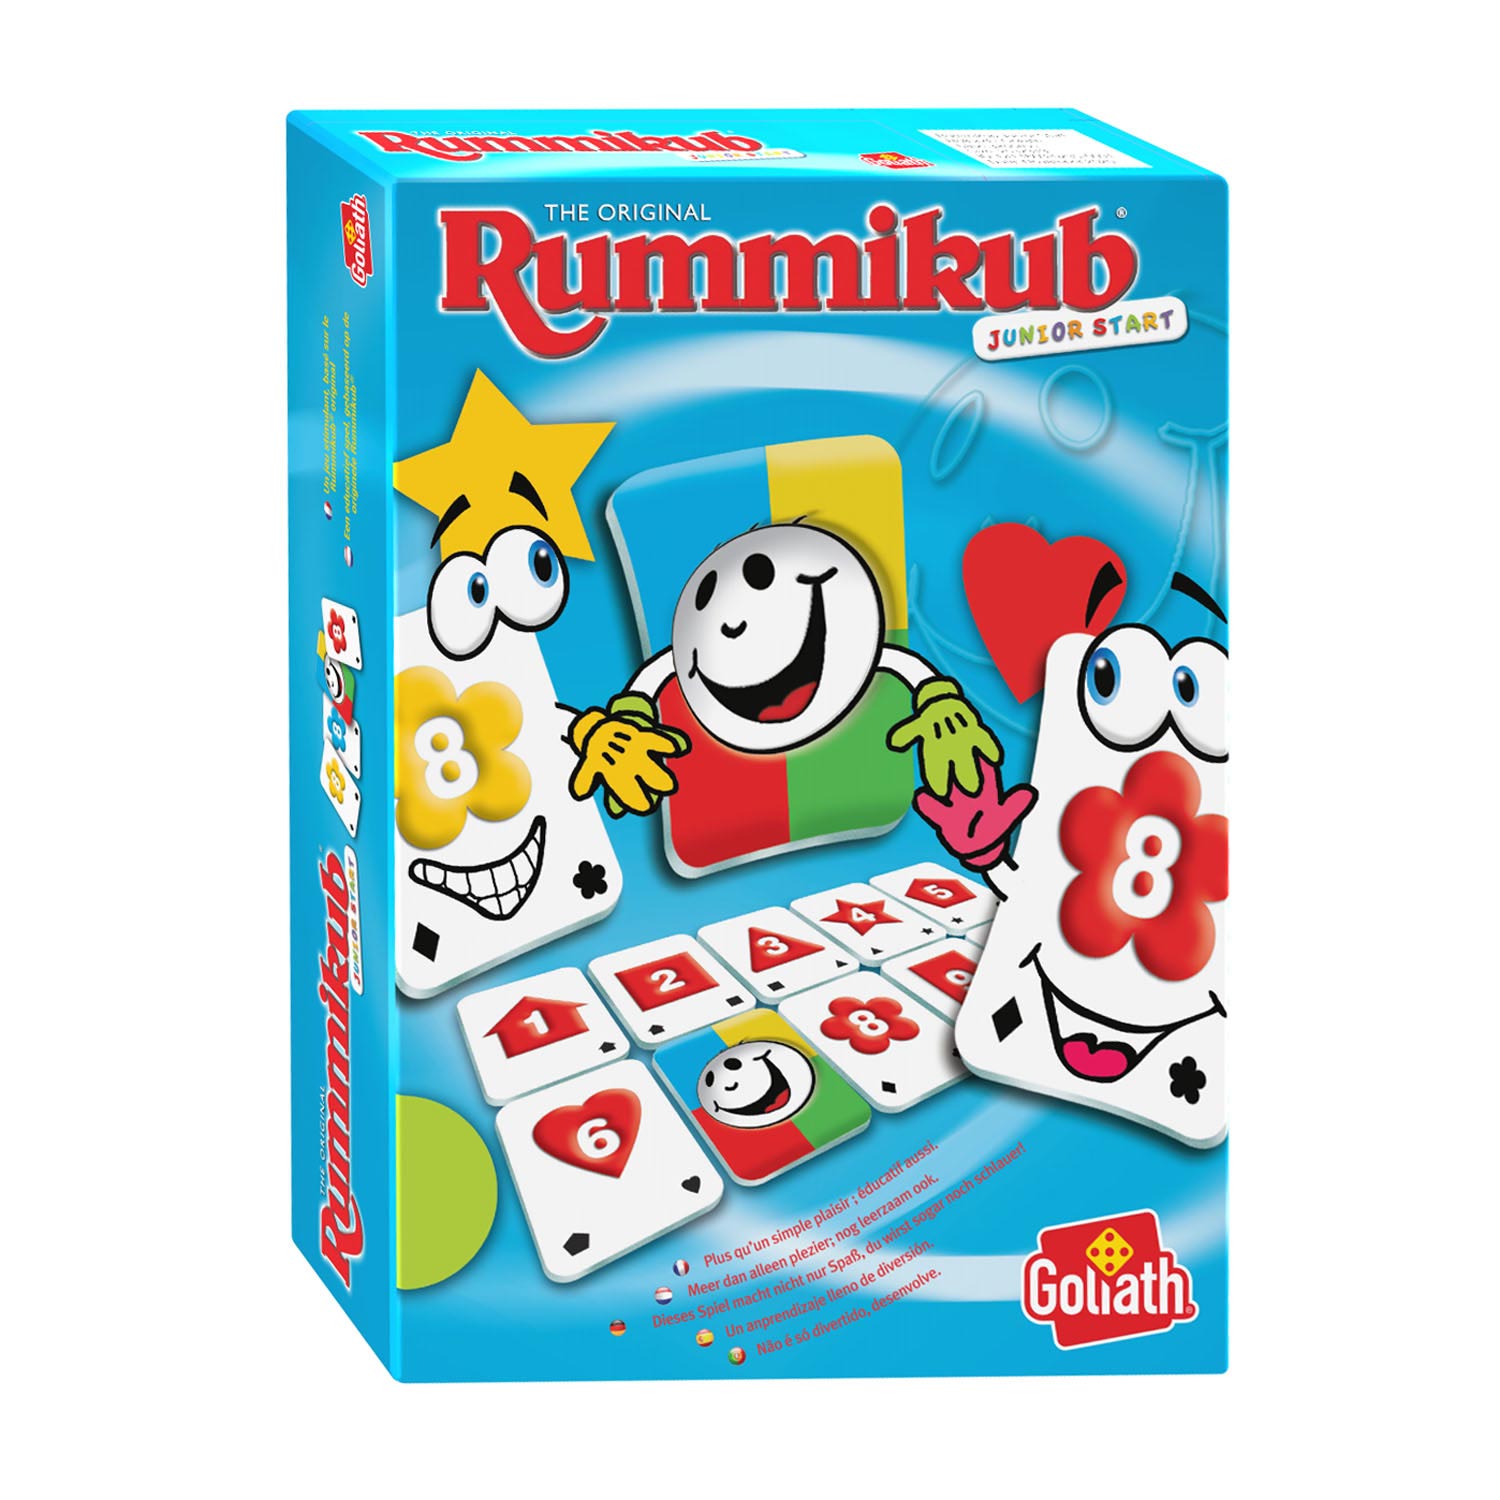 Jumbo 03942 - Travel Rummikub, Kompaktspiel, 26,03 €